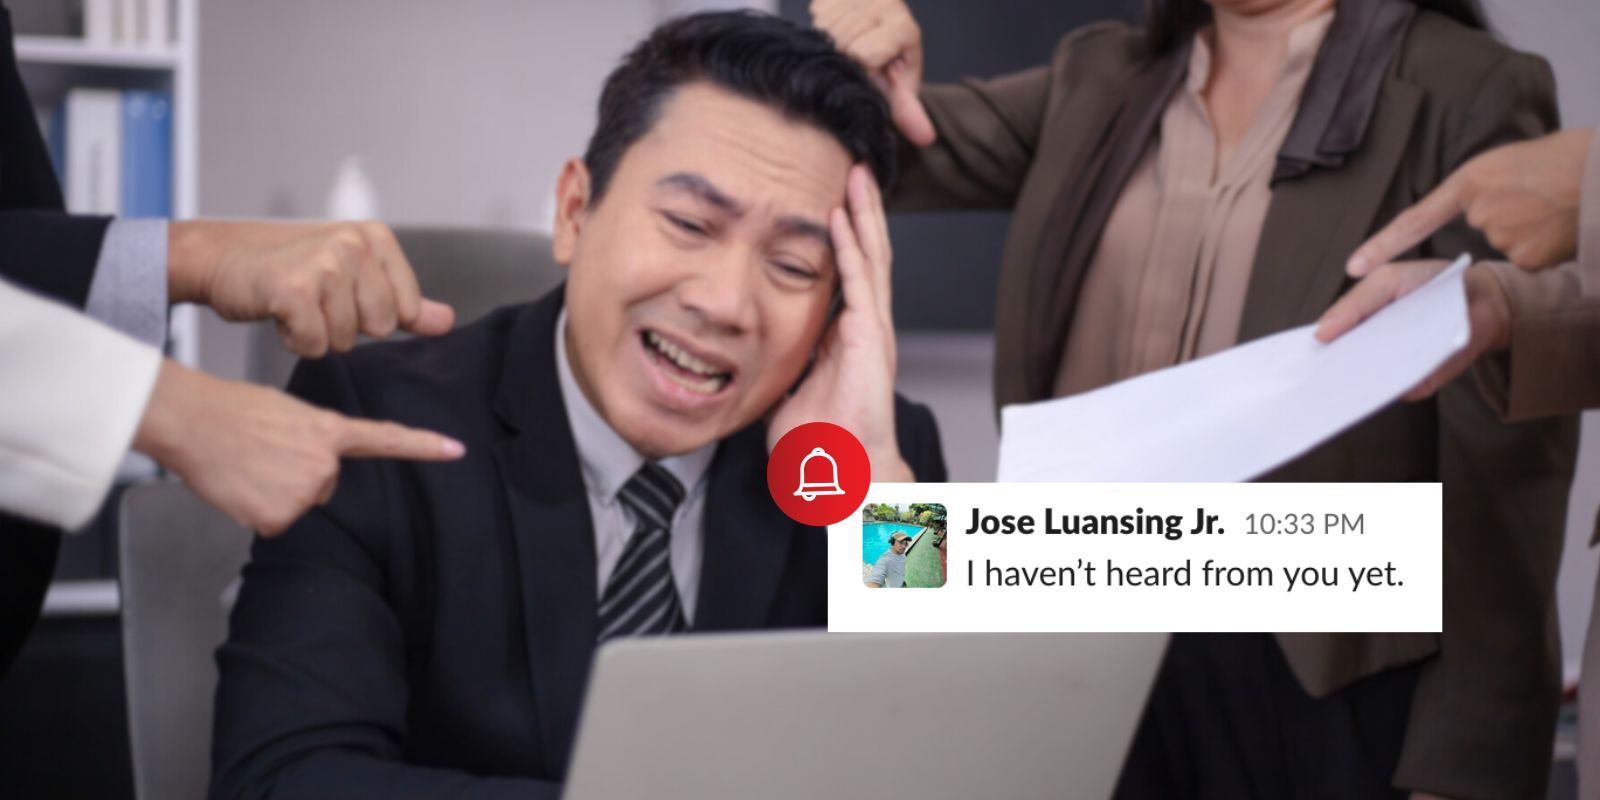 مرد آسیایی پر استرس در محل کار با دریافت هشدار آزاردهنده